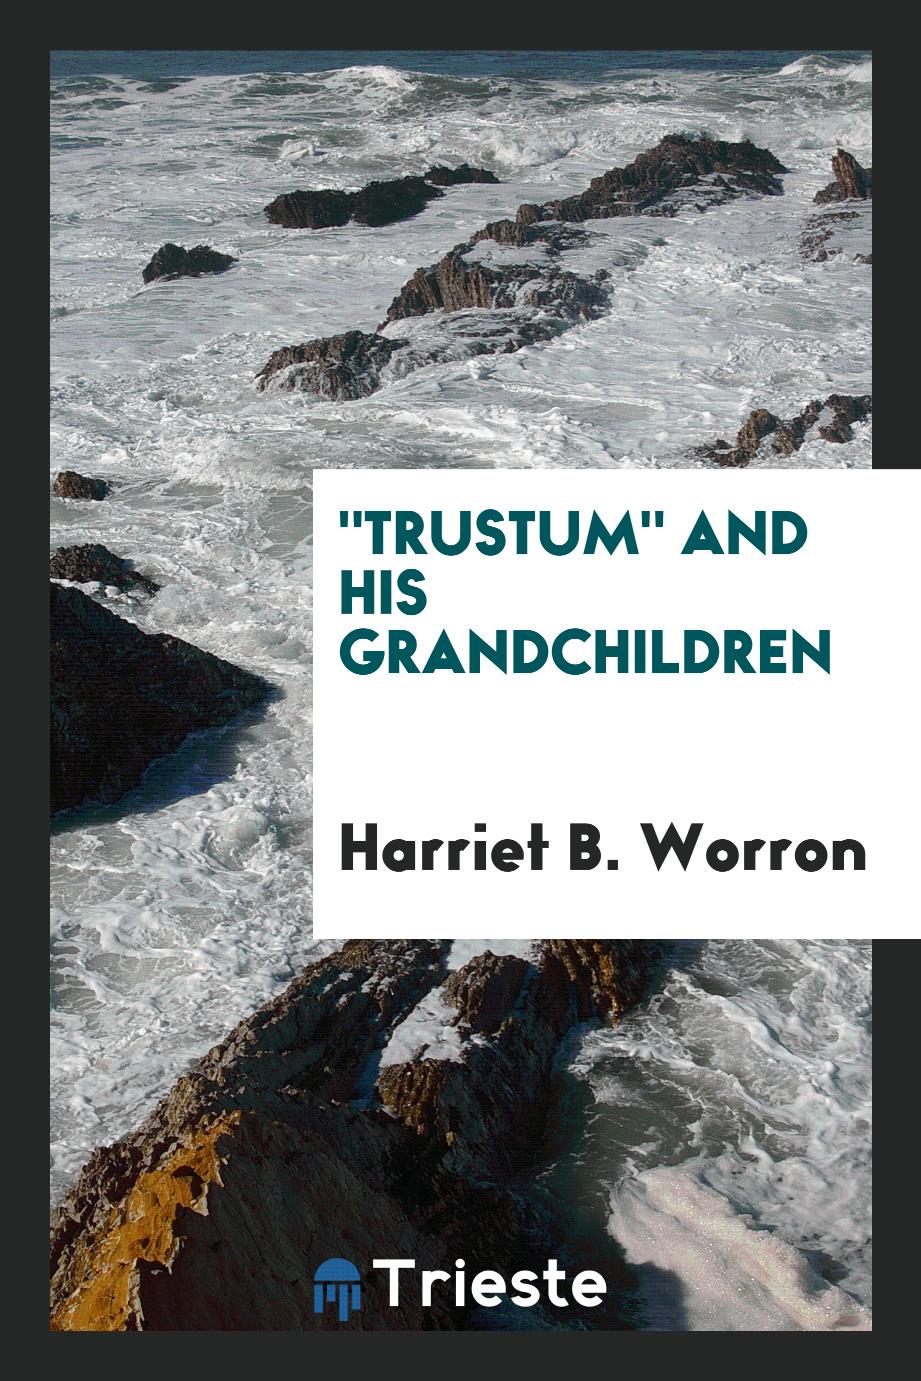 "Trustum" and his grandchildren